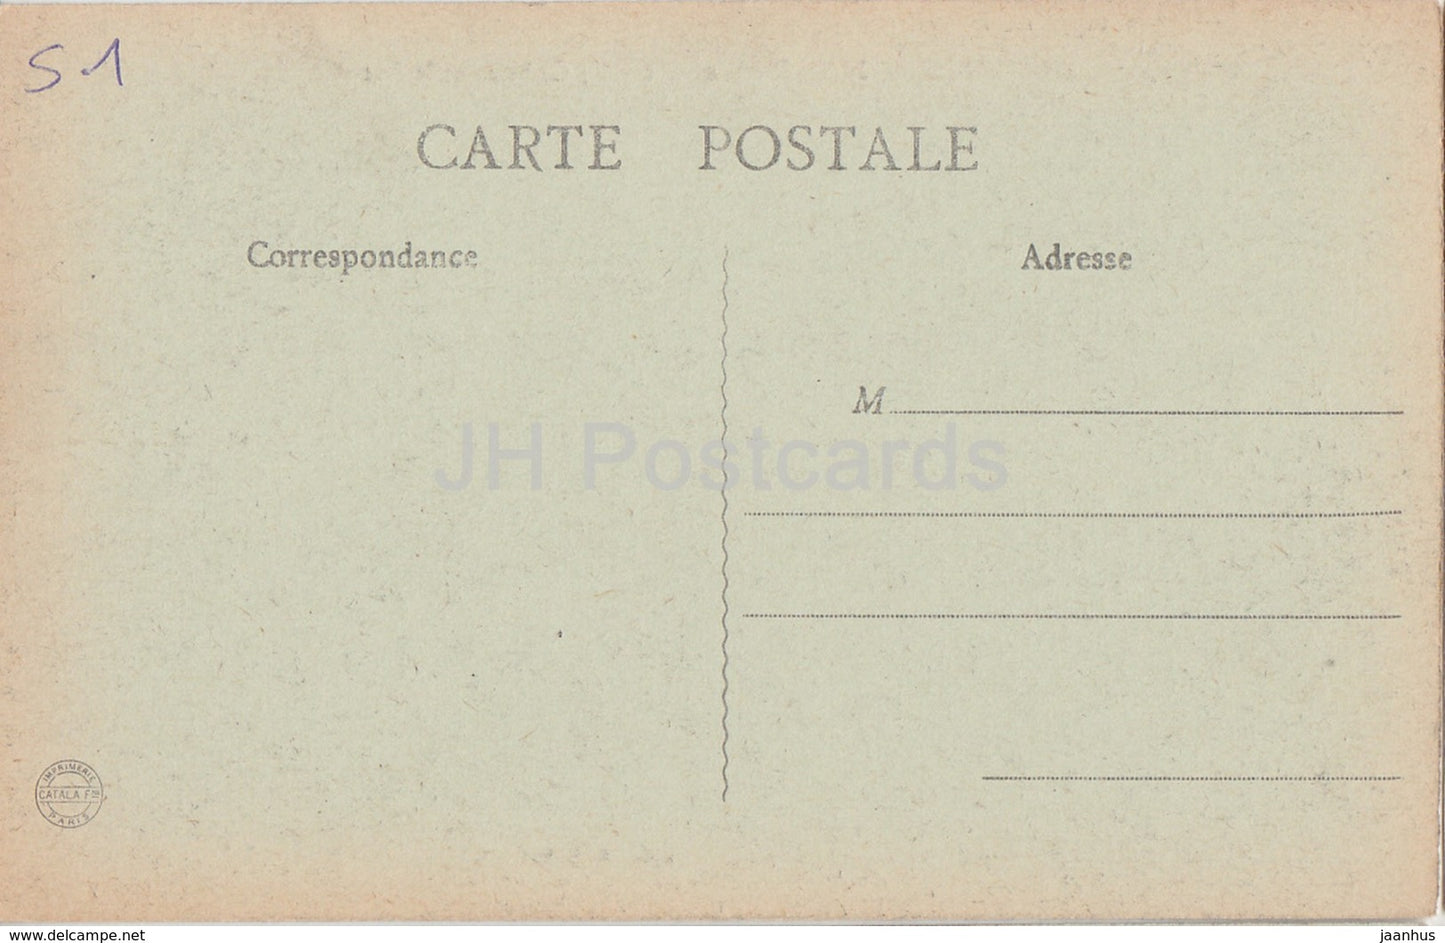 Boursault - Le Chateau et le Lac - Schloss - 16 - alte Postkarte - Frankreich - unbenutzt